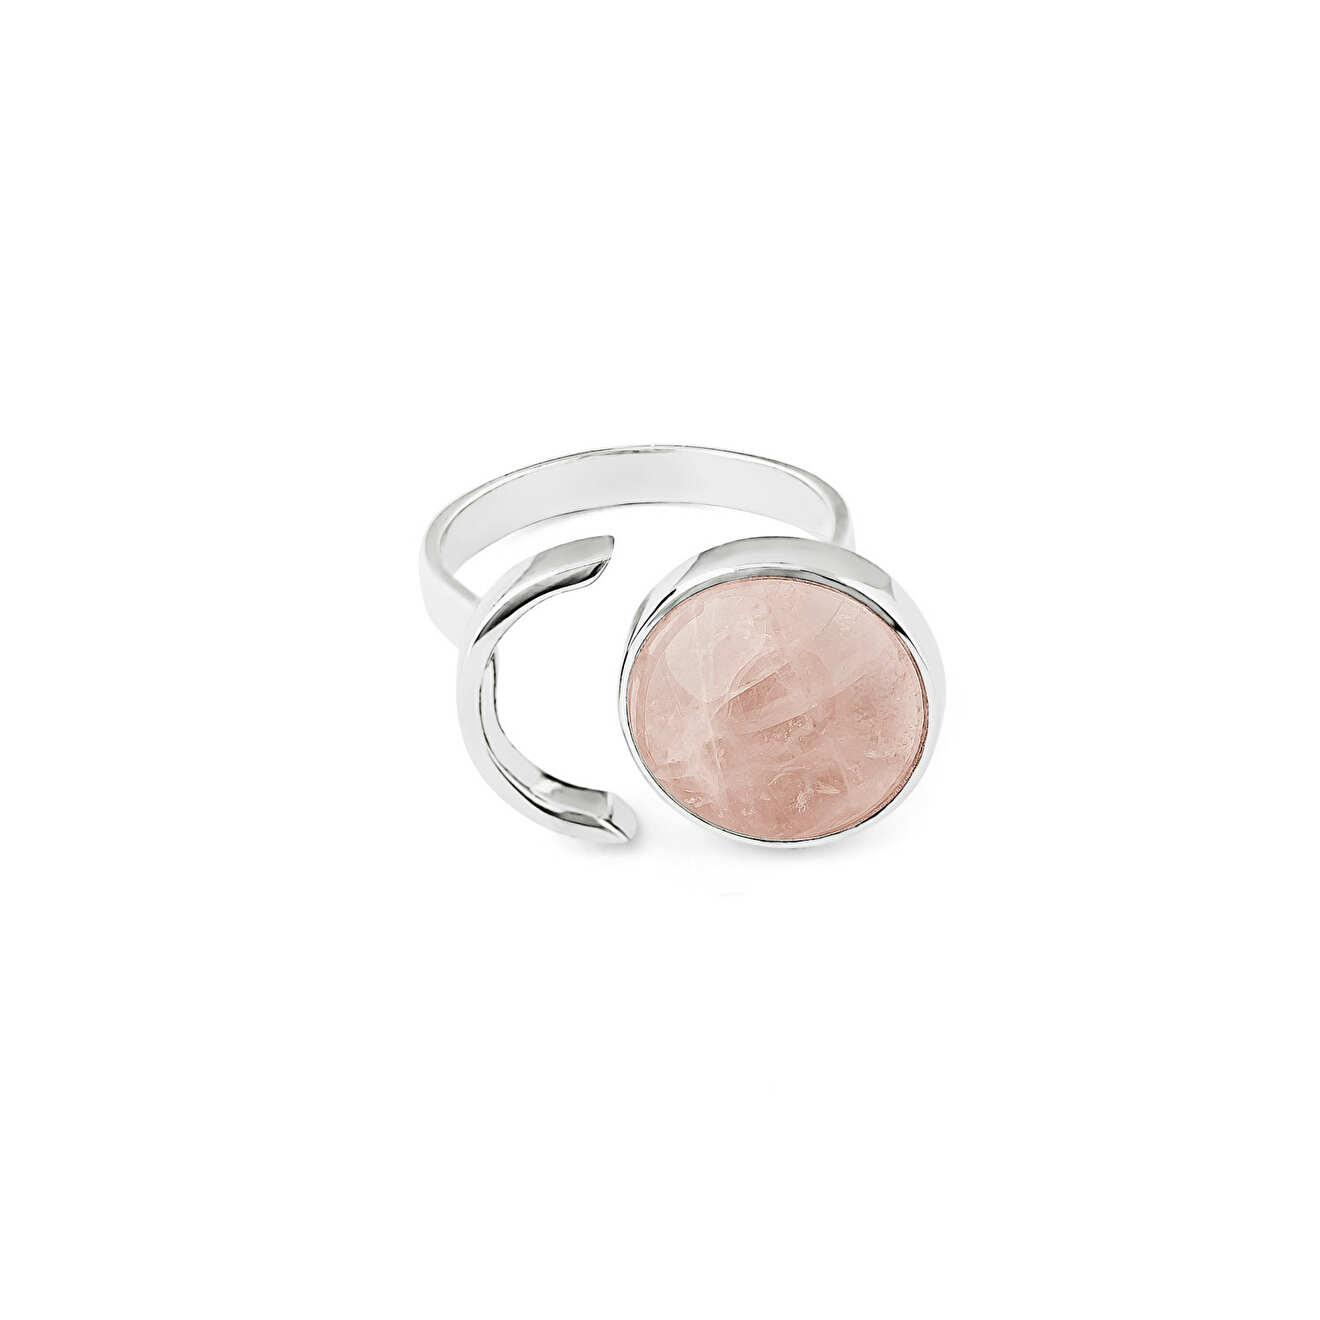 Wishes Come True Кольцо-круг из серебра с розовым кварцем подвеска ракушка кварц розовый